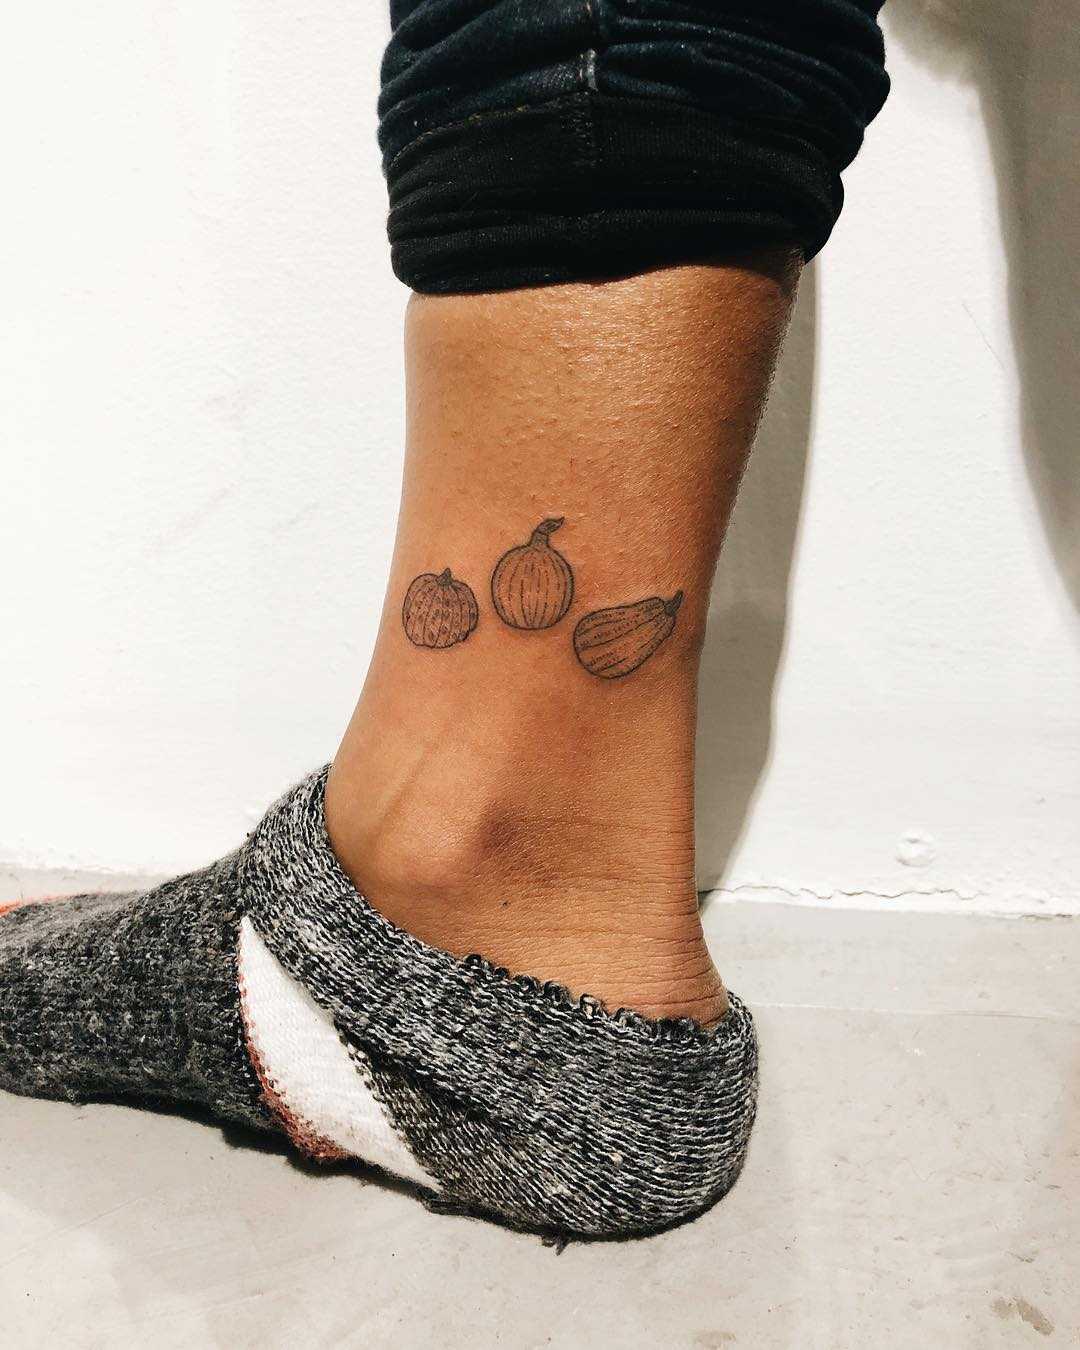 Squash trio tattoo by Kelli Kikcio